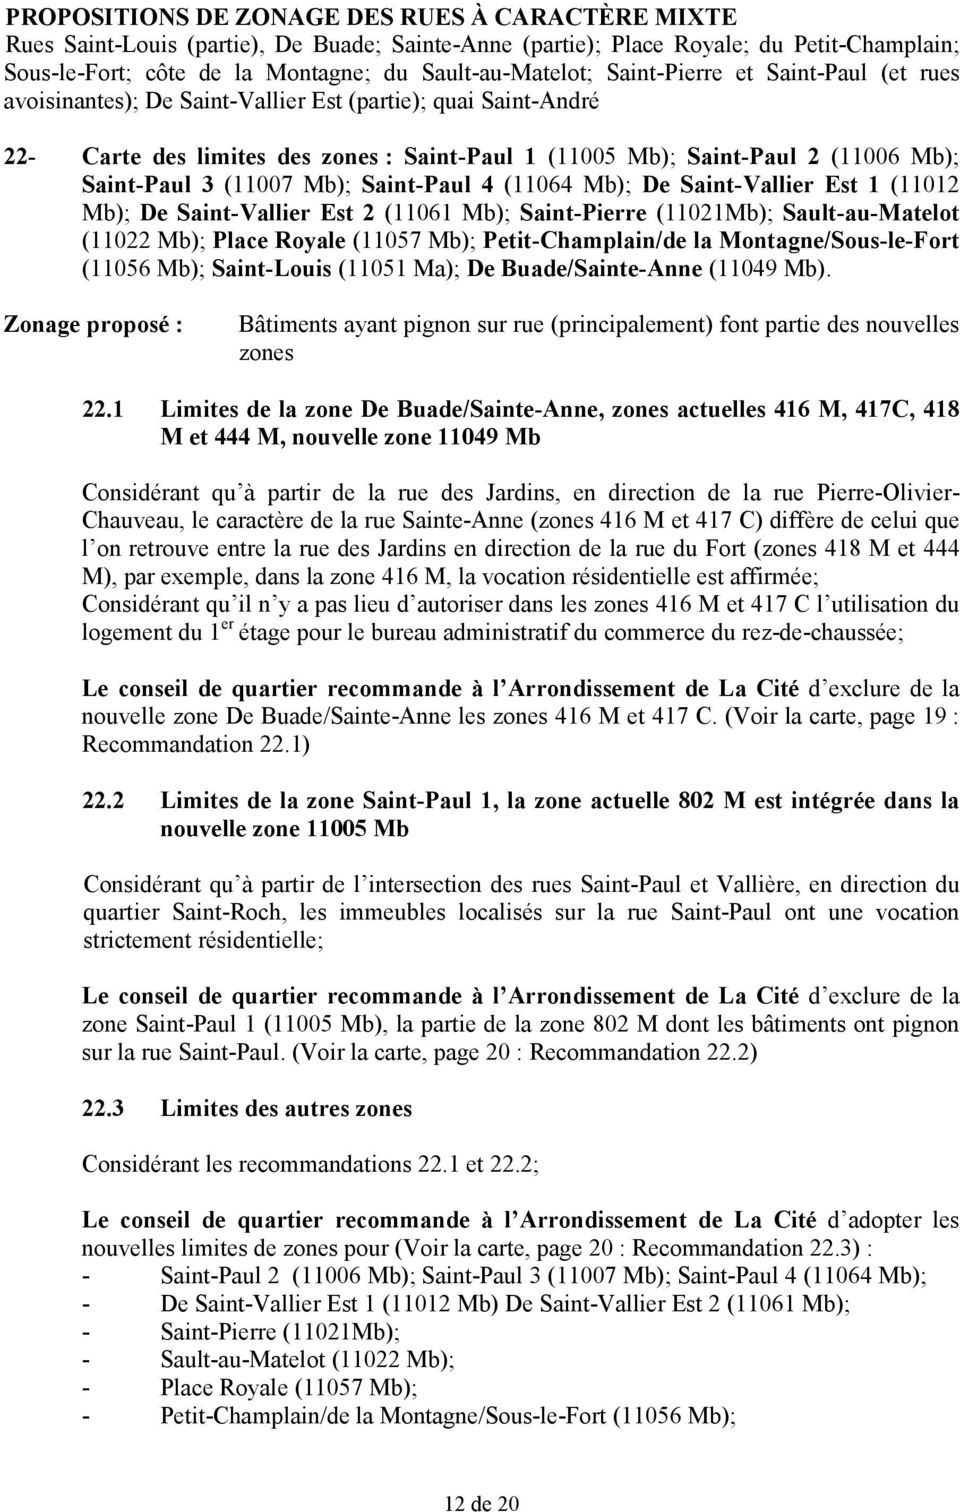 (11007 Mb); Saint-Paul 4 (11064 Mb); De Saint-Vallier Est 1 (11012 Mb); De Saint-Vallier Est 2 (11061 Mb); Saint-Pierre (11021Mb); Sault-au-Matelot (11022 Mb); Place Royale (11057 Mb);